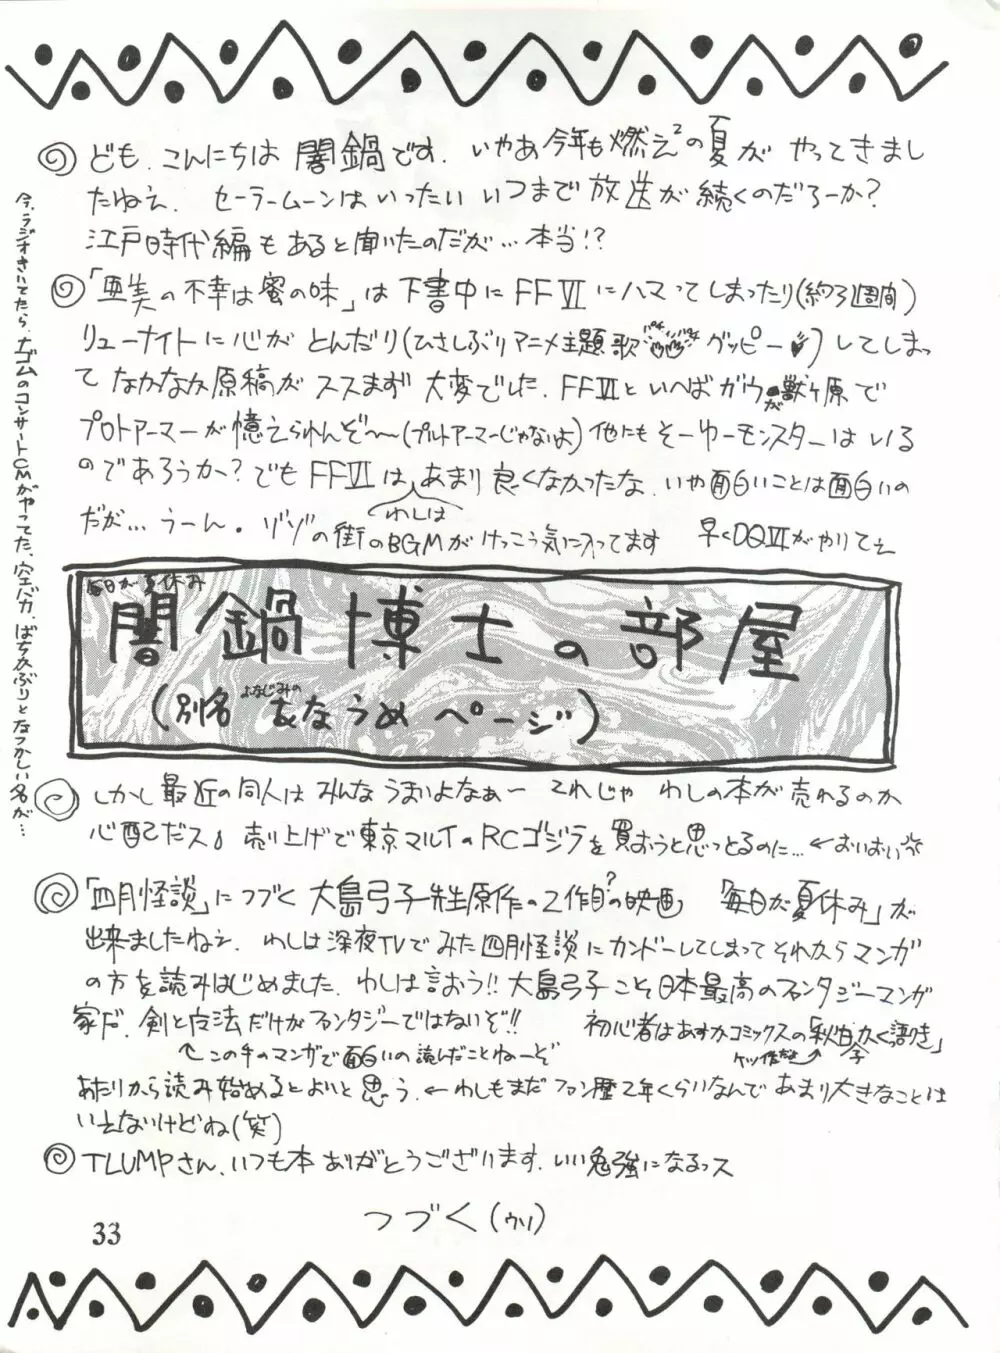 BAZOOKA - page33